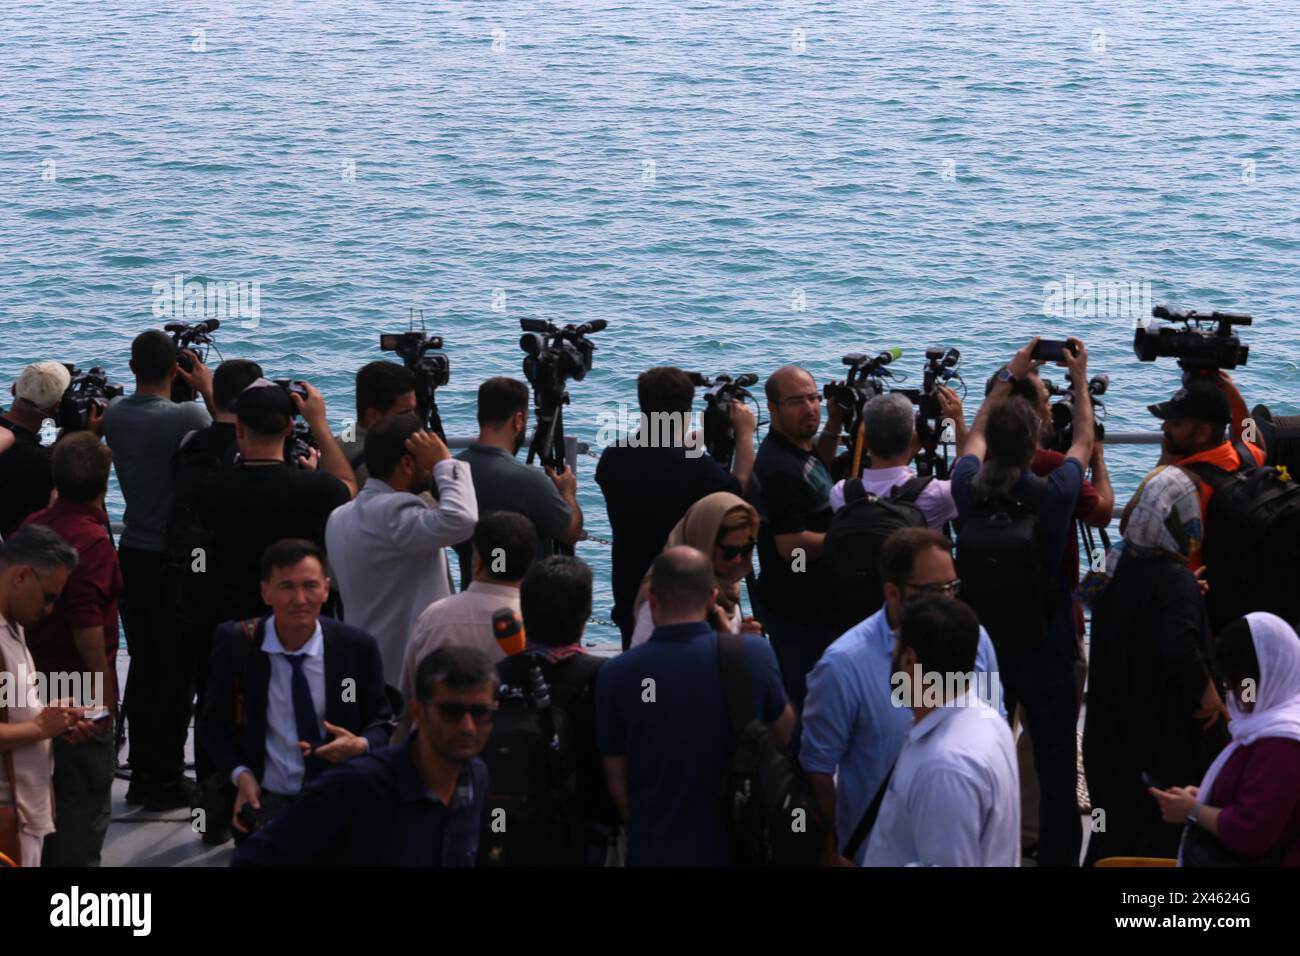 29 aprile 2024, Golfo Persico, Bushehr, Iran: video giornalisti stranieri che filmano il Golfo Persico sono a bordo di una nave da guerra IRIS 112 Shahid (martire) Salimi del corpo delle guardie rivoluzionarie islamiche (IRGC) nel Golfo Persico durante la parata marina dell'IRGC per commemorare la giornata nazionale del Golfo Persico vicino alla centrale nucleare di Bushehr nella città portuale di Bushehr, provincia di Bushehr, Iran meridionale. L'Iran celebra l'anniversario della liberazione del sud del paese dall'occupazione portoghese nel 1622 come "giornata nazionale del Golfo Persico" a Bushehr il 29 aprile 2024. La data coincide con l'anniversario Foto Stock